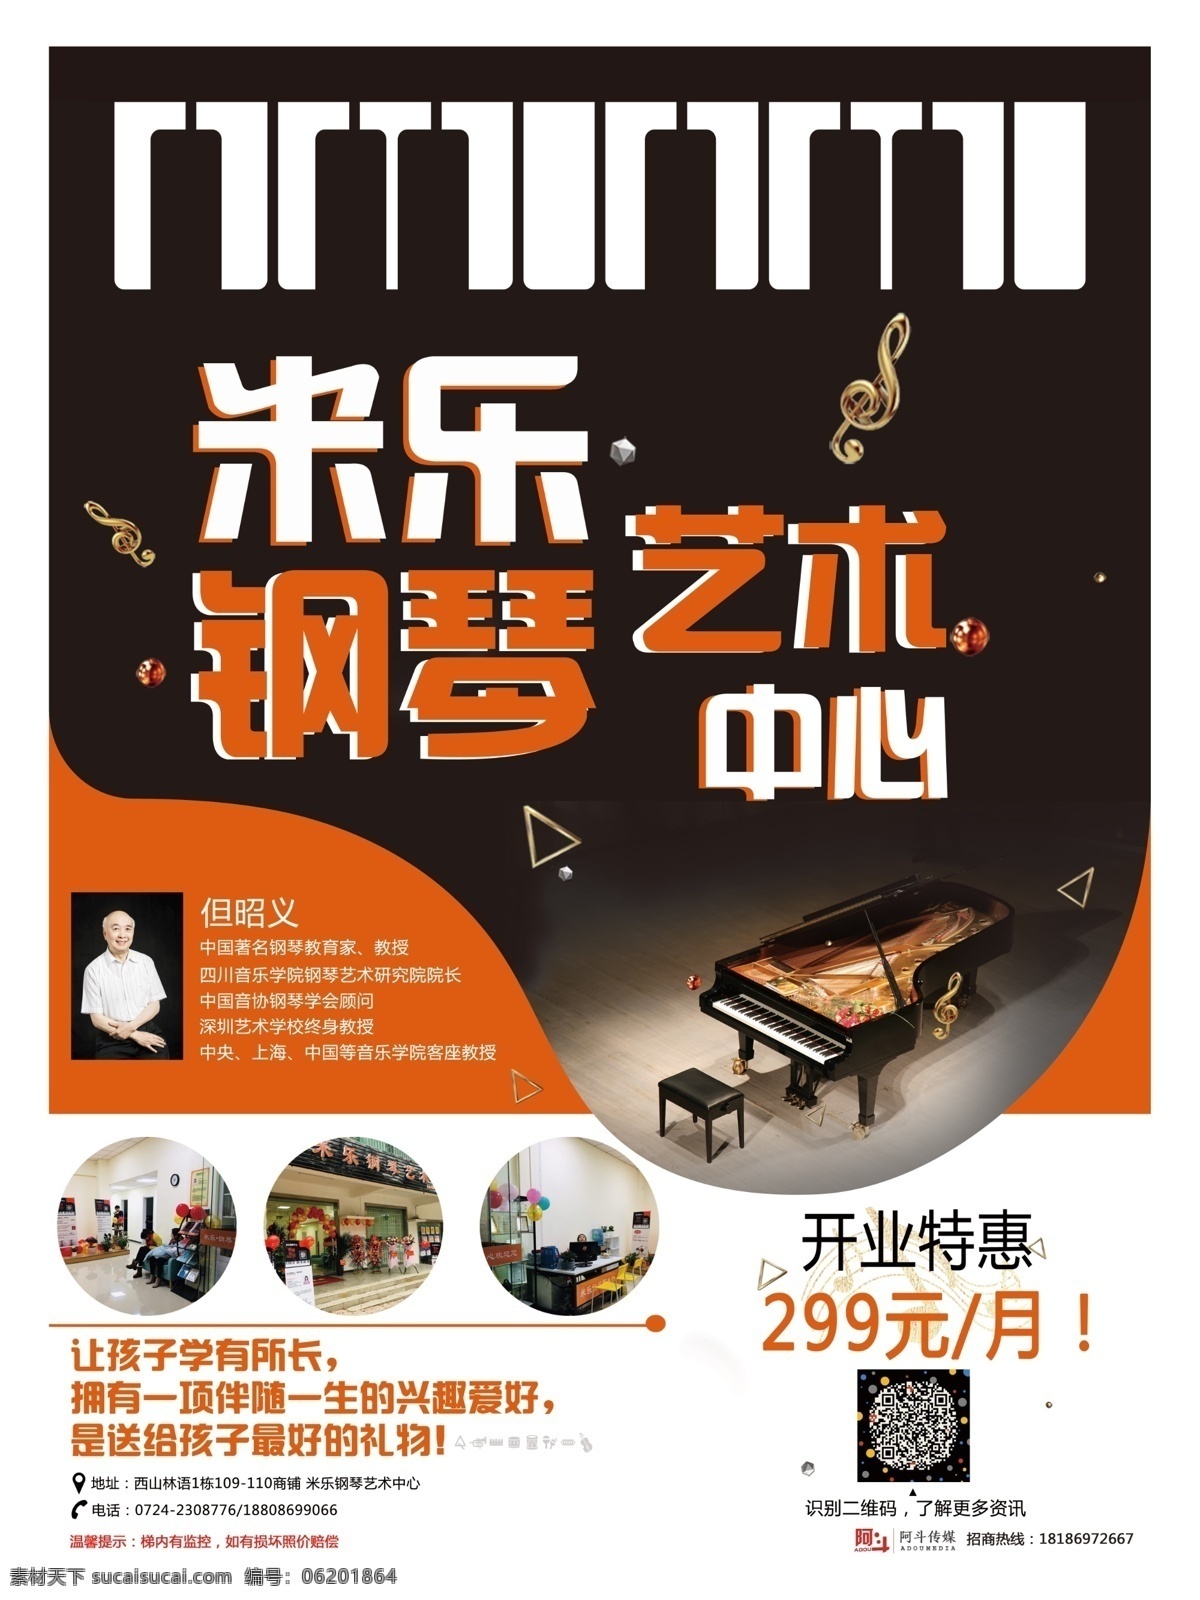 米乐钢琴 钢琴培训中心 钢琴辅导班 艺术 钢琴 钢琴海报